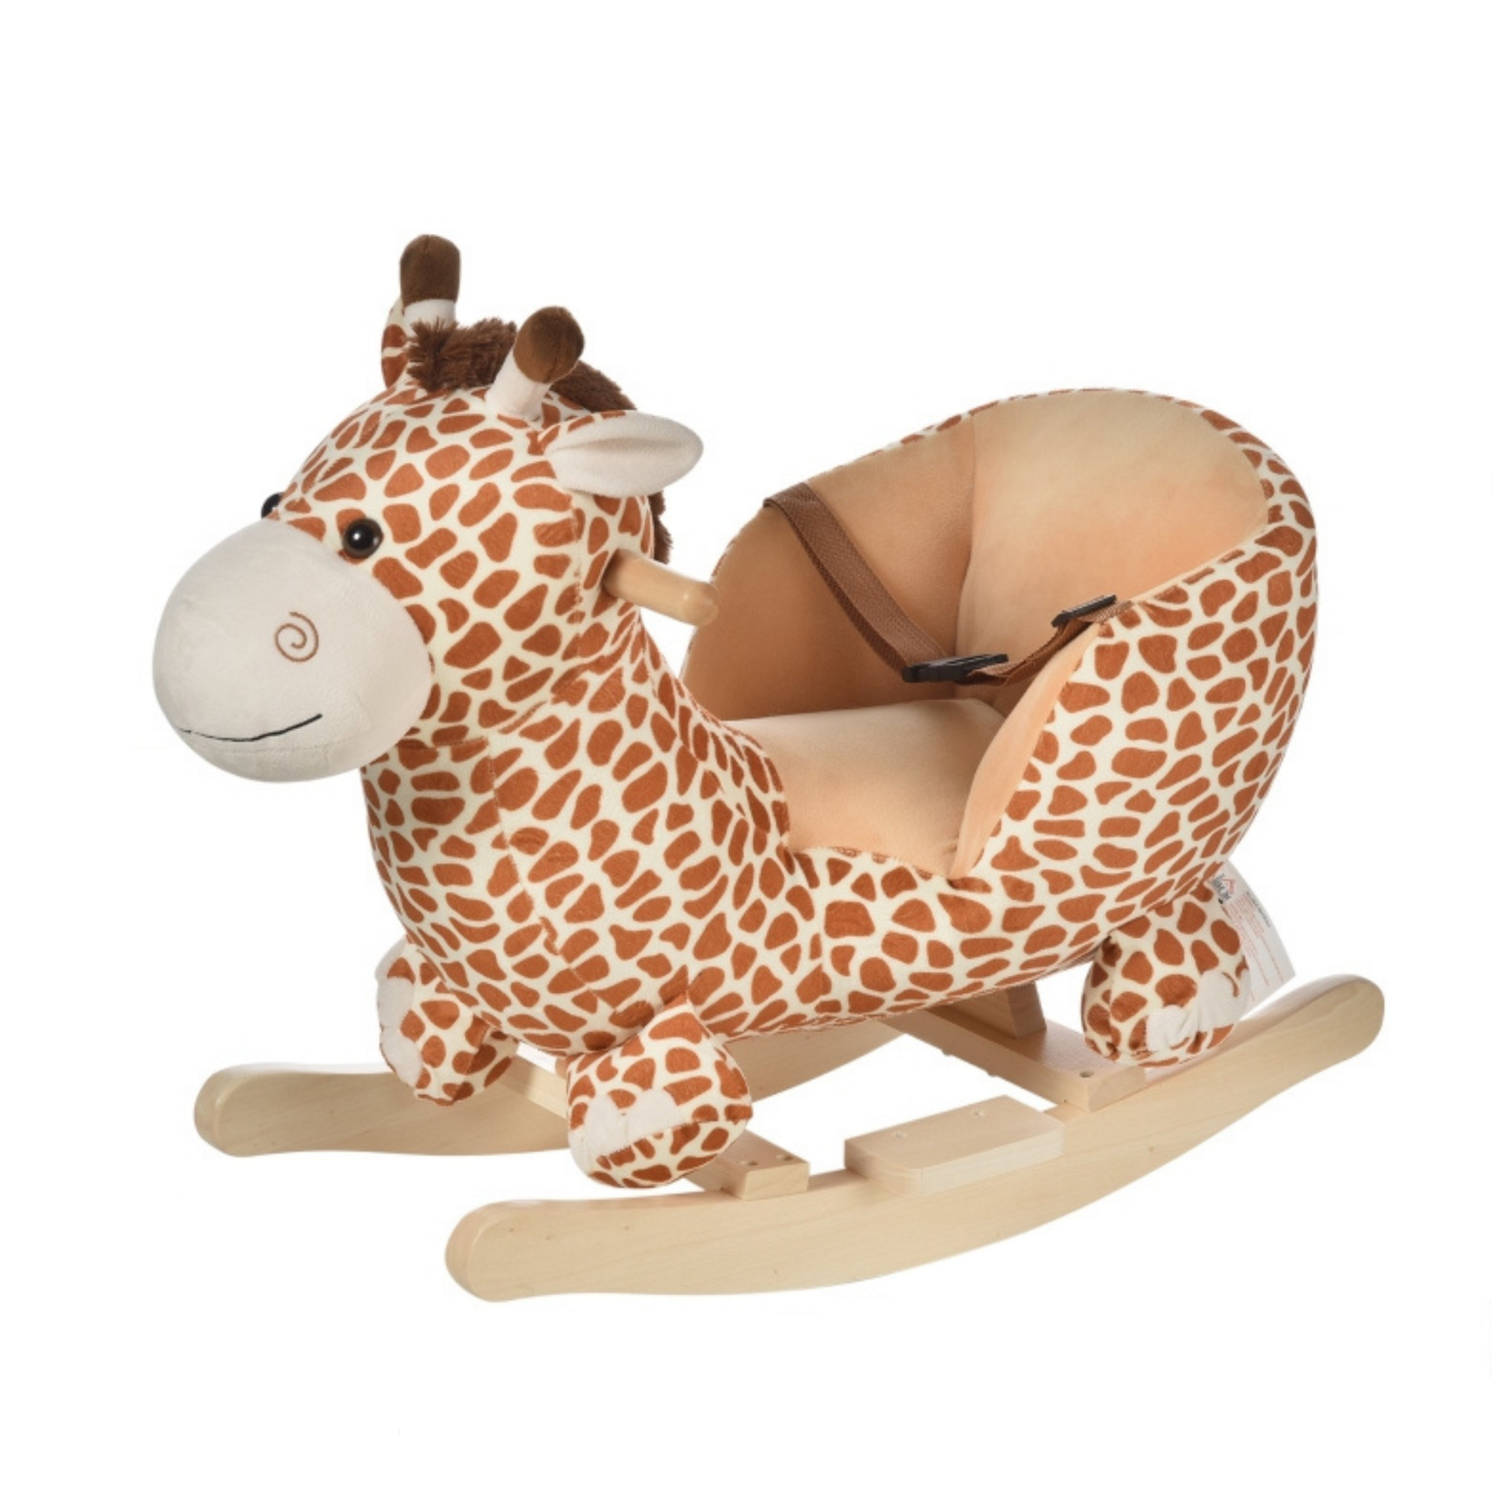 Schommelpaard Hobbeldier Hobbelpaard Schommelstoel voor Kinderen Speelgoed L60 x B33 x H45 cm